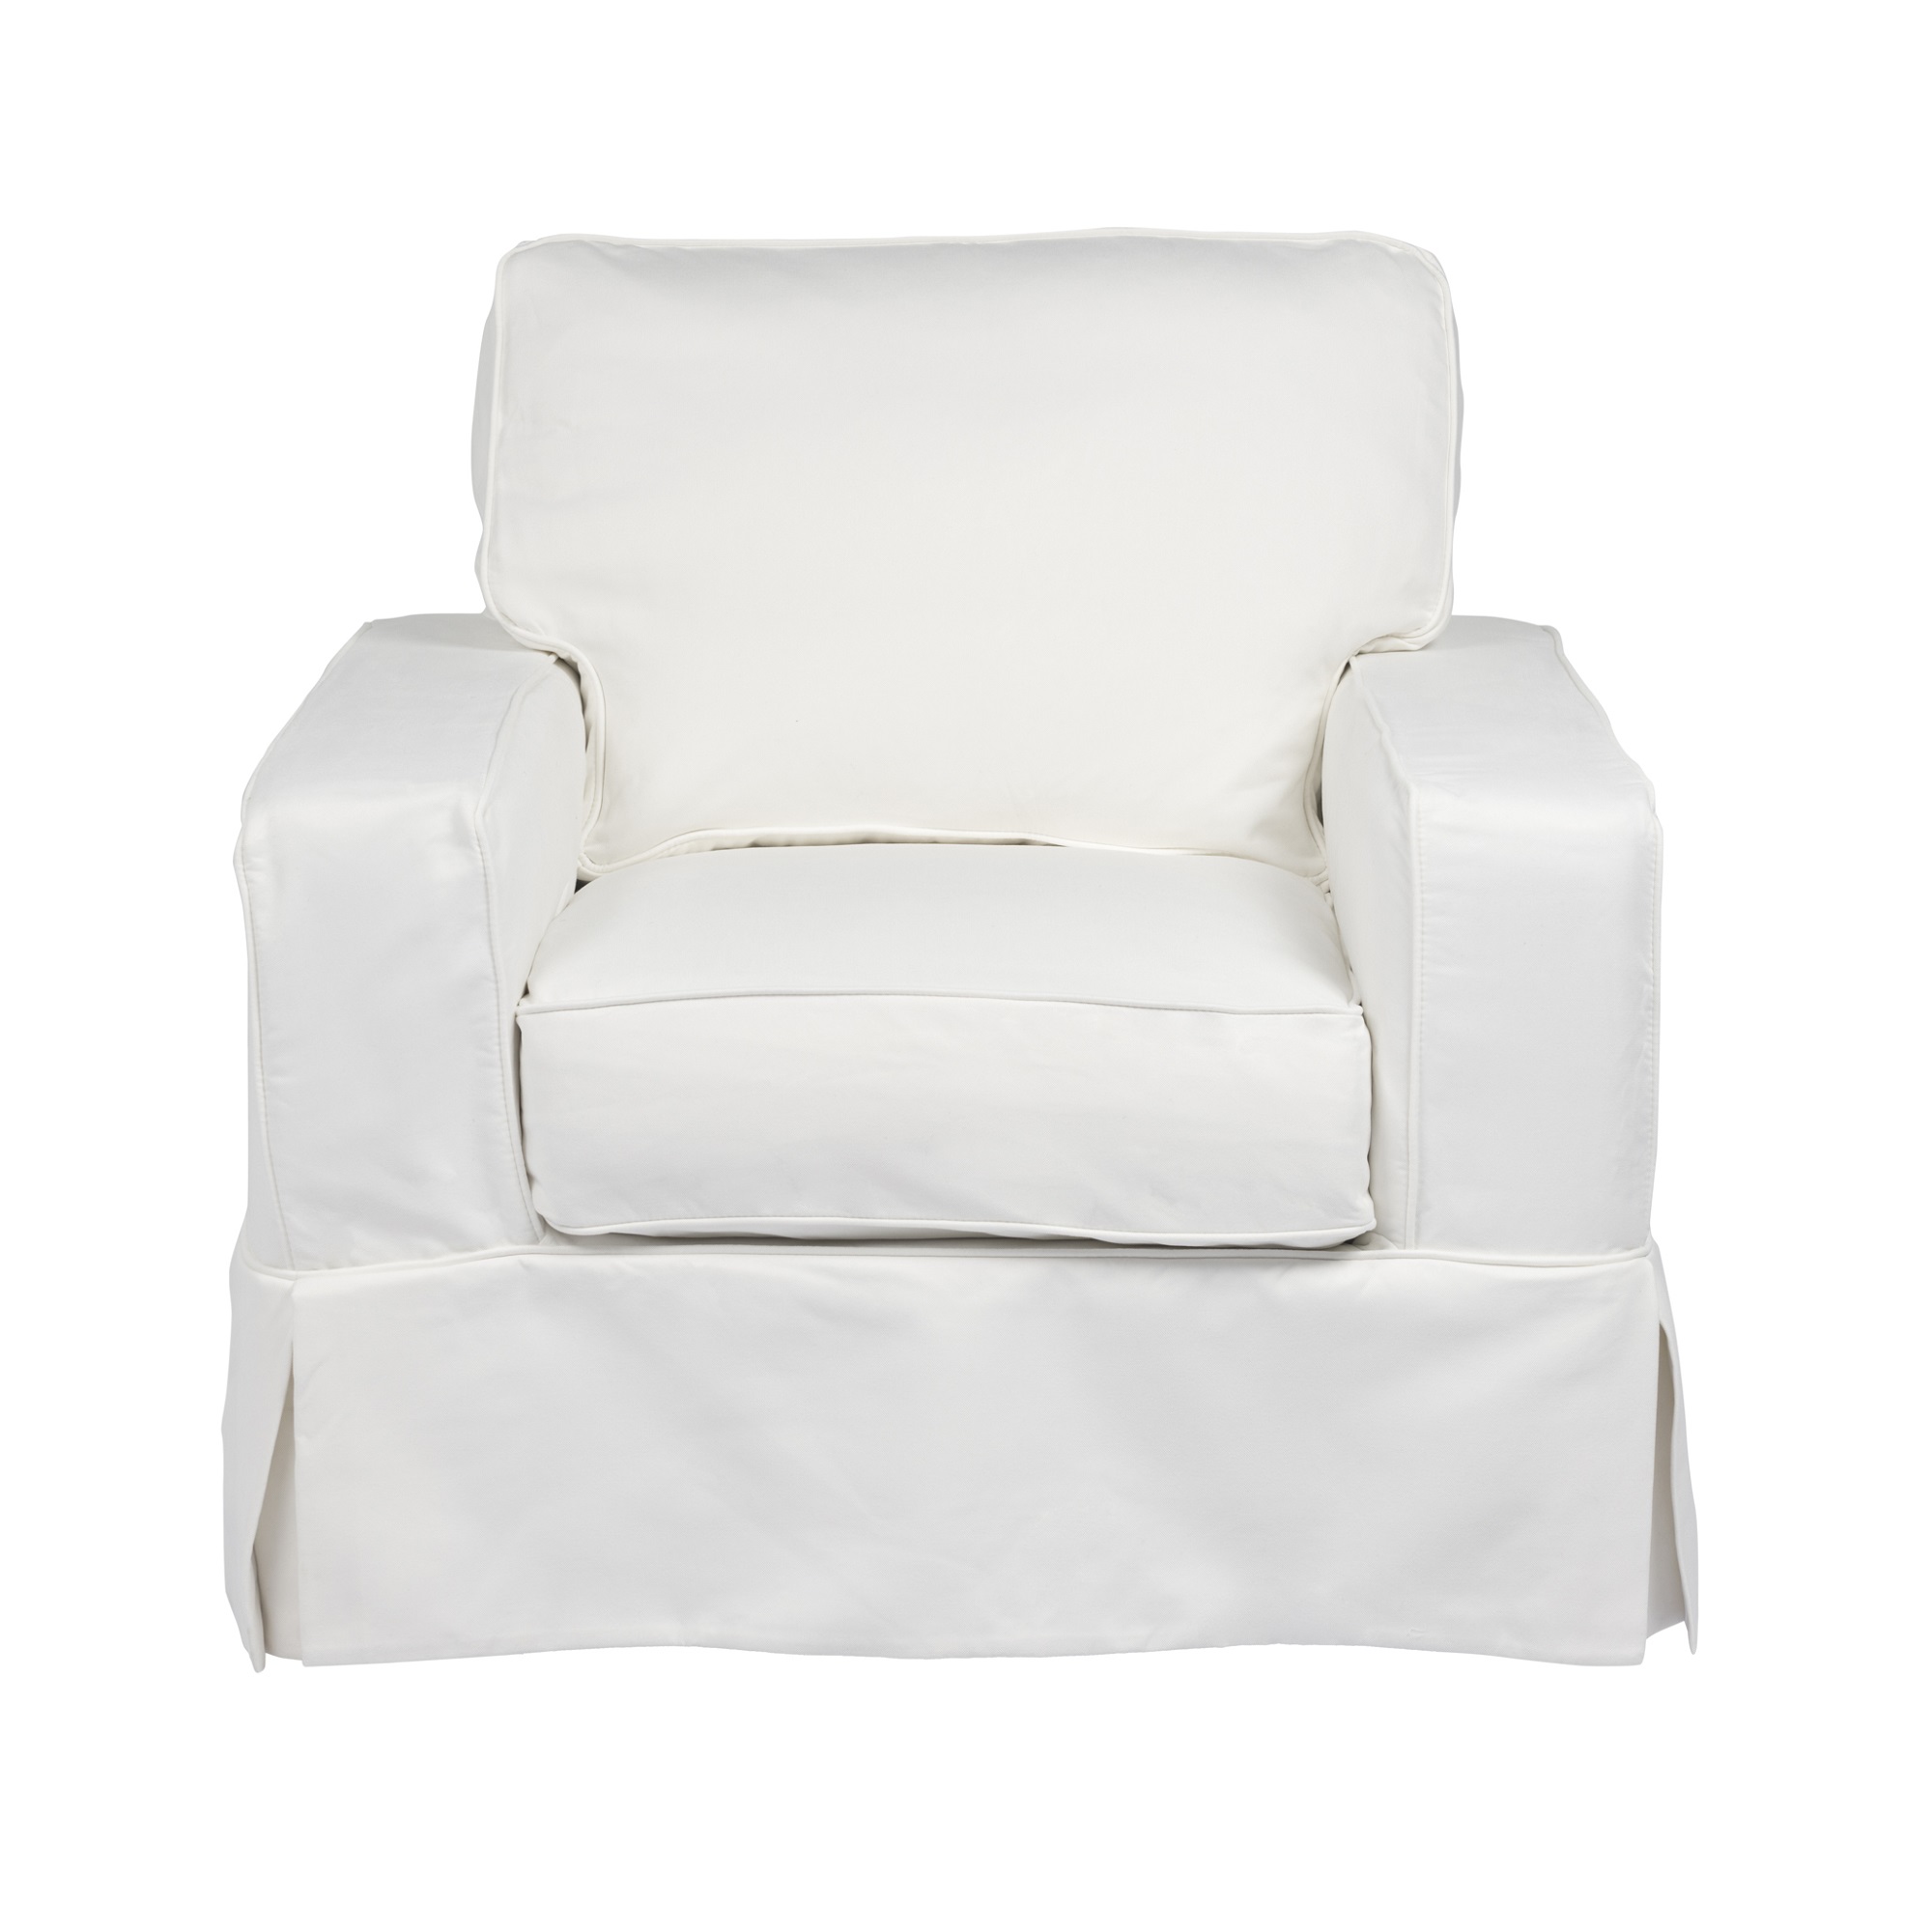 Box Cushion Chair Slipcover, T Cushion Chair Slipcovers 3 Piece